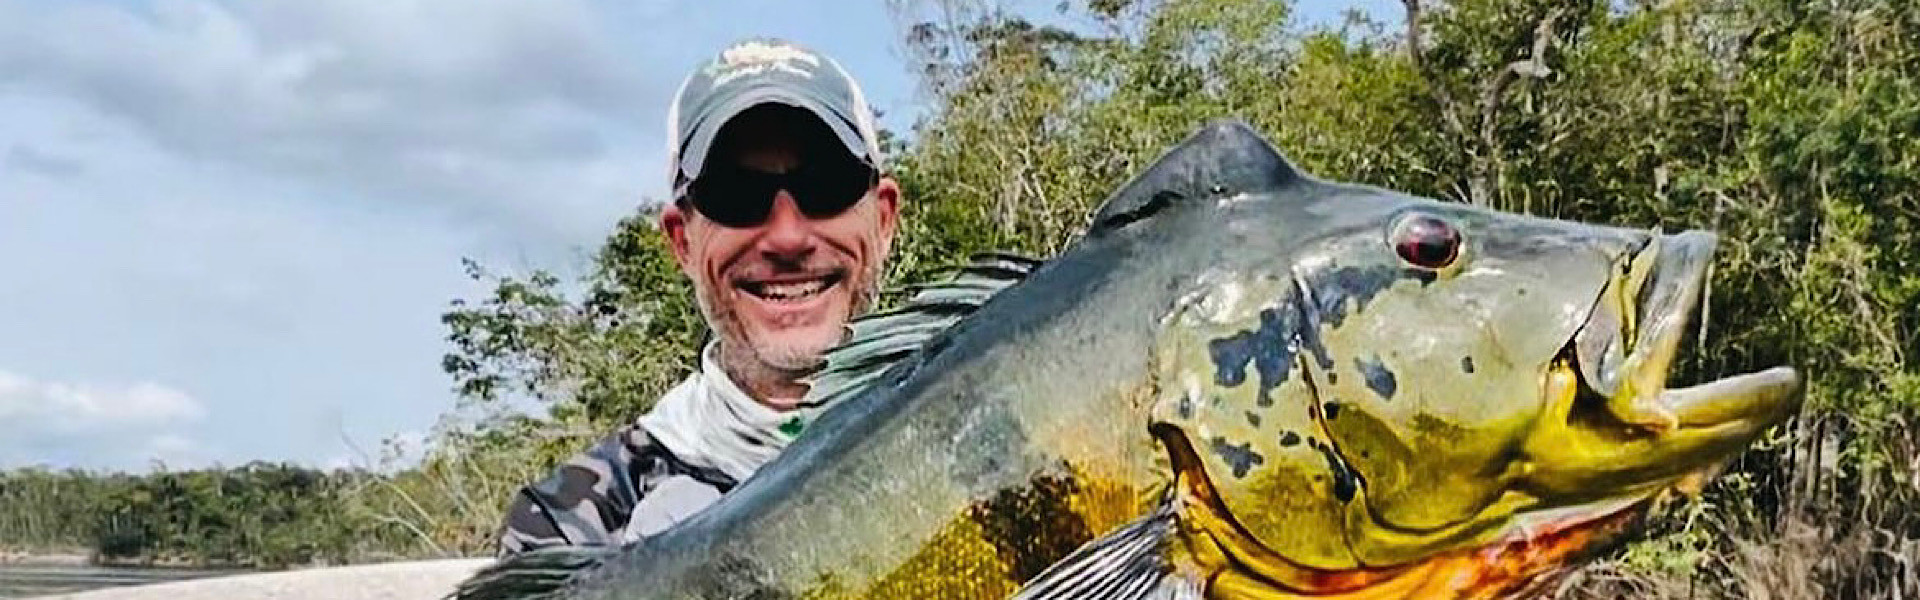 Pescador norte-americano captura tucunaré-açu recorde em águas brasileiras: 92 cm